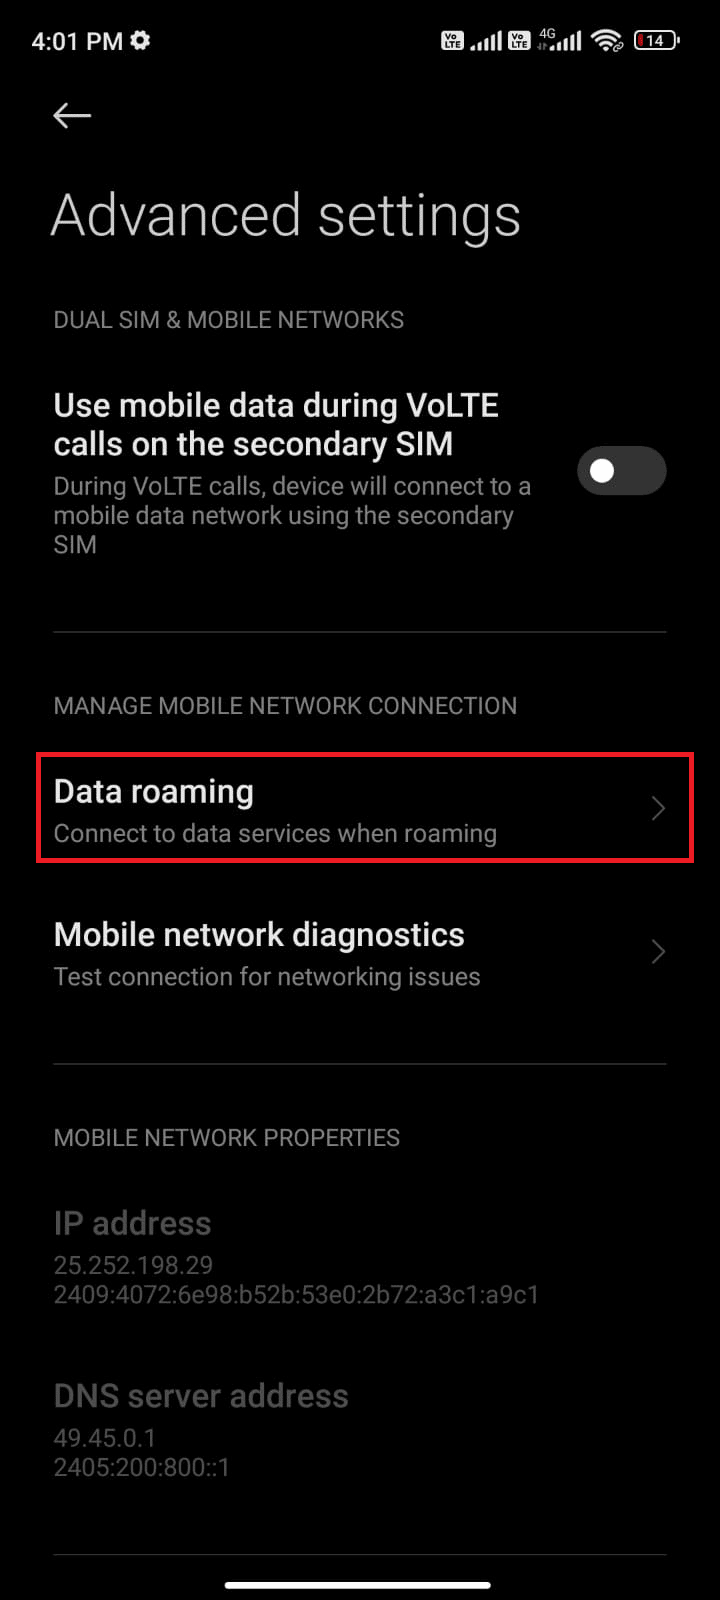 tap on Data roaming